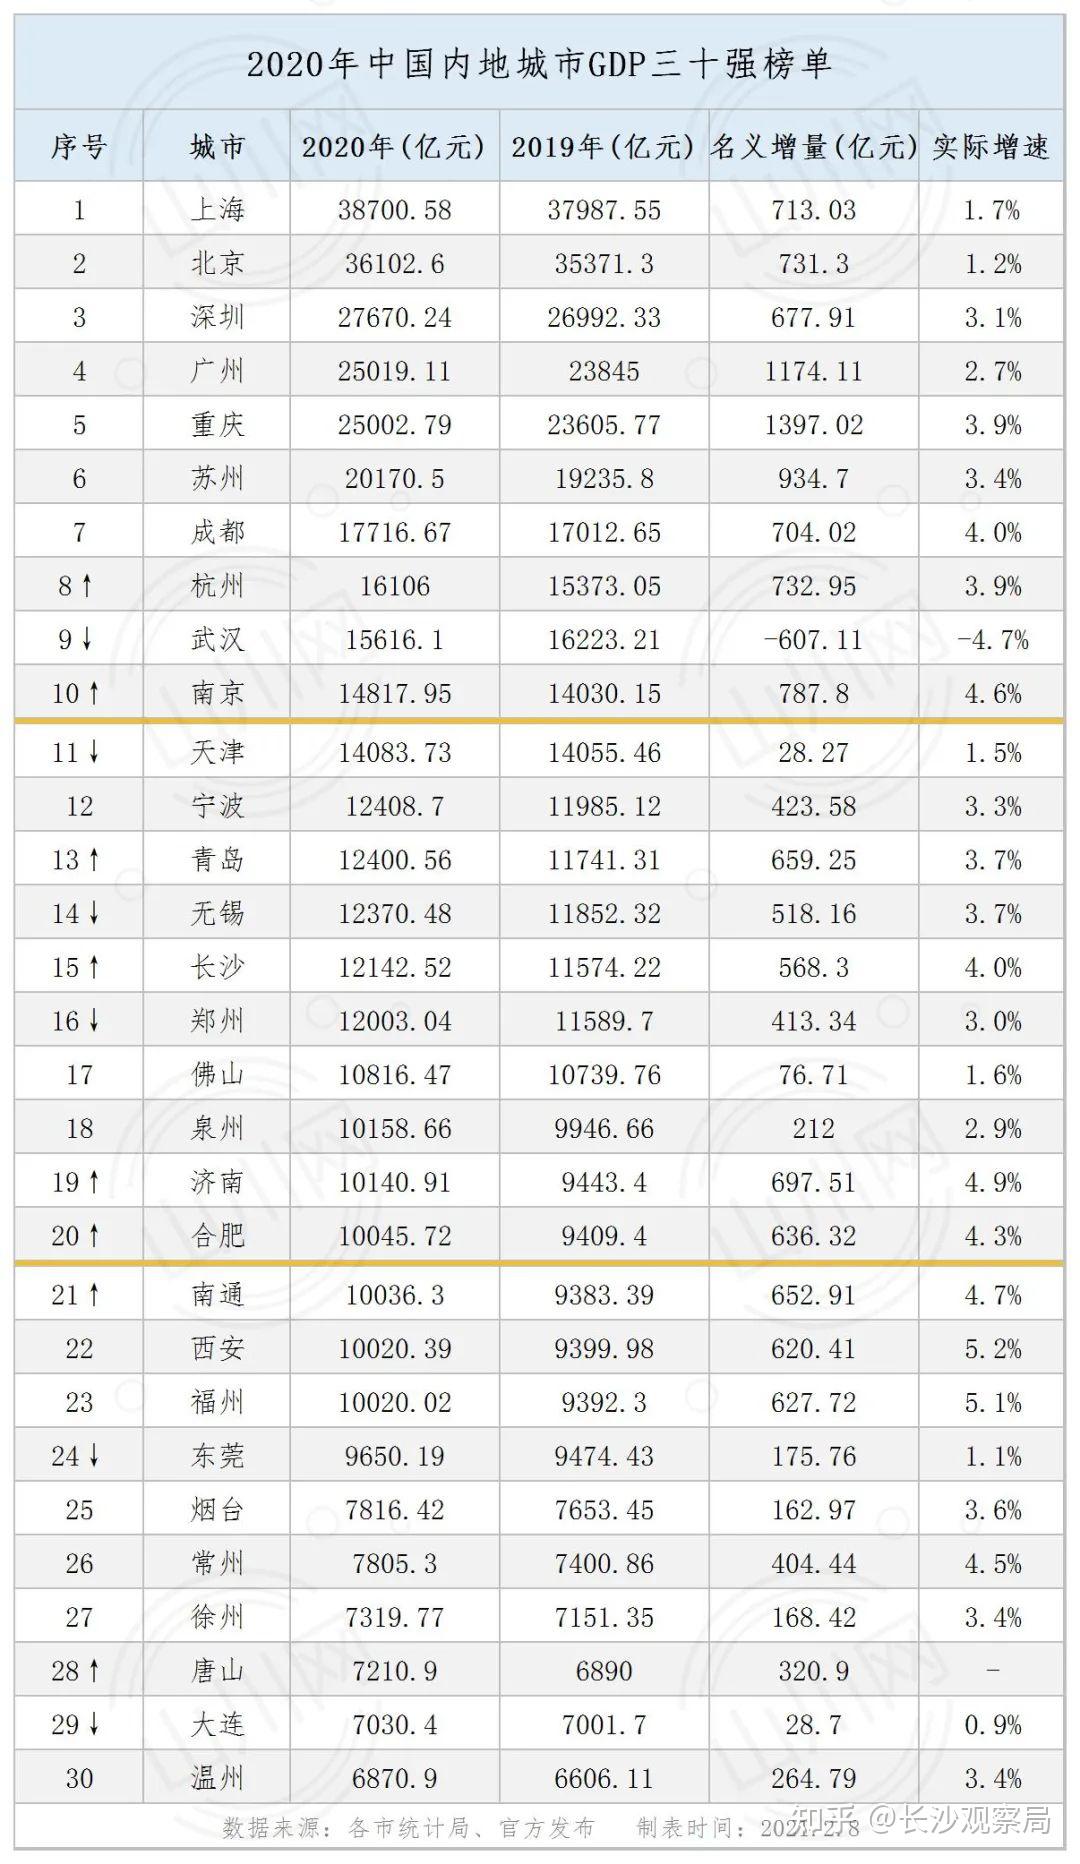 常德2020gdp全国排名_桃源常德的2020年前三季度GDP出炉,在湖南省内排名第几